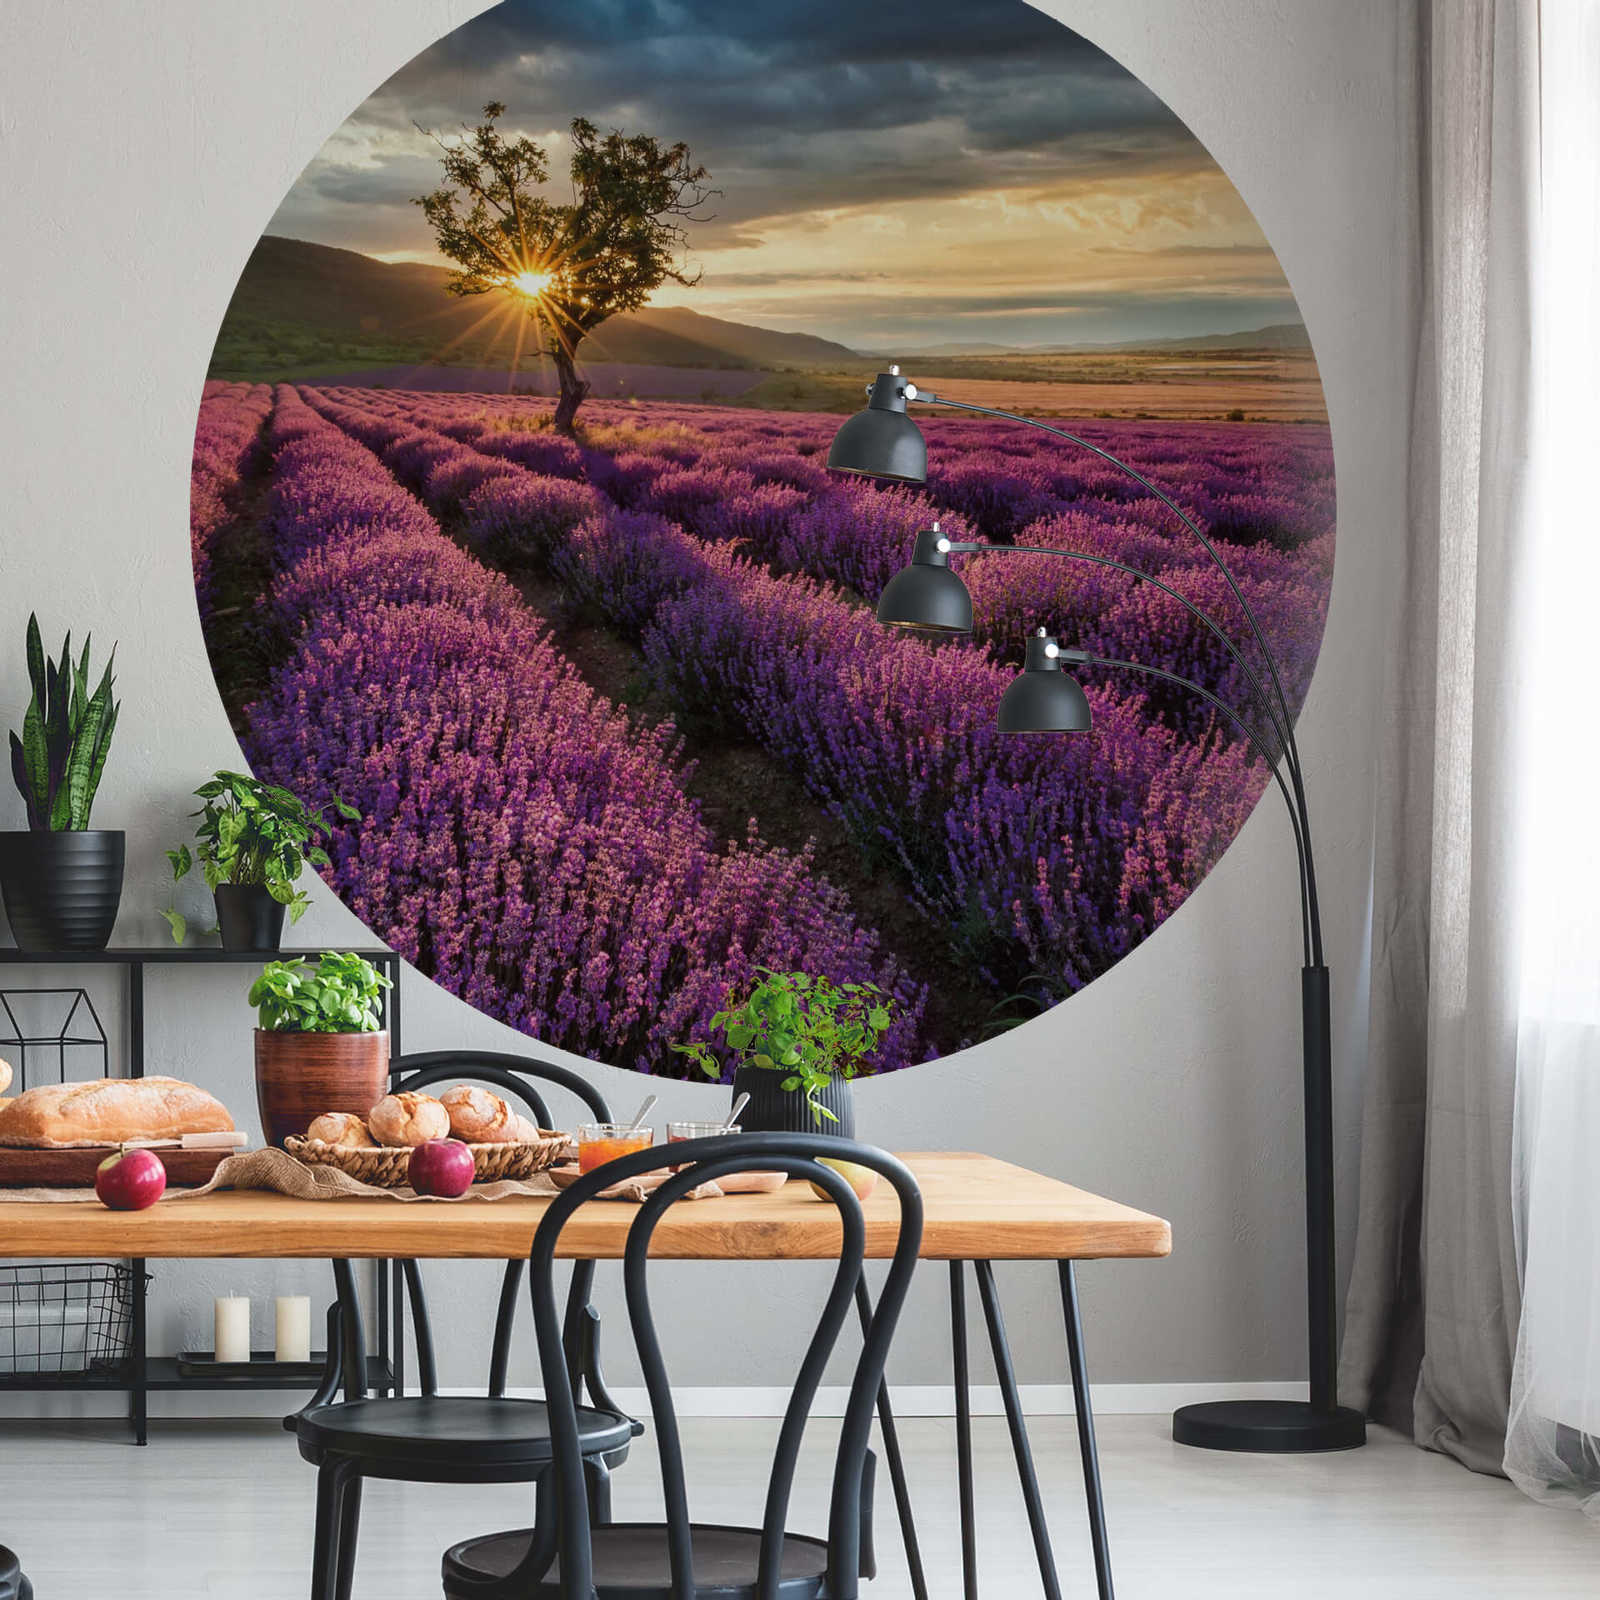             Fototapete rund Lavendelfeld in der Provence
        